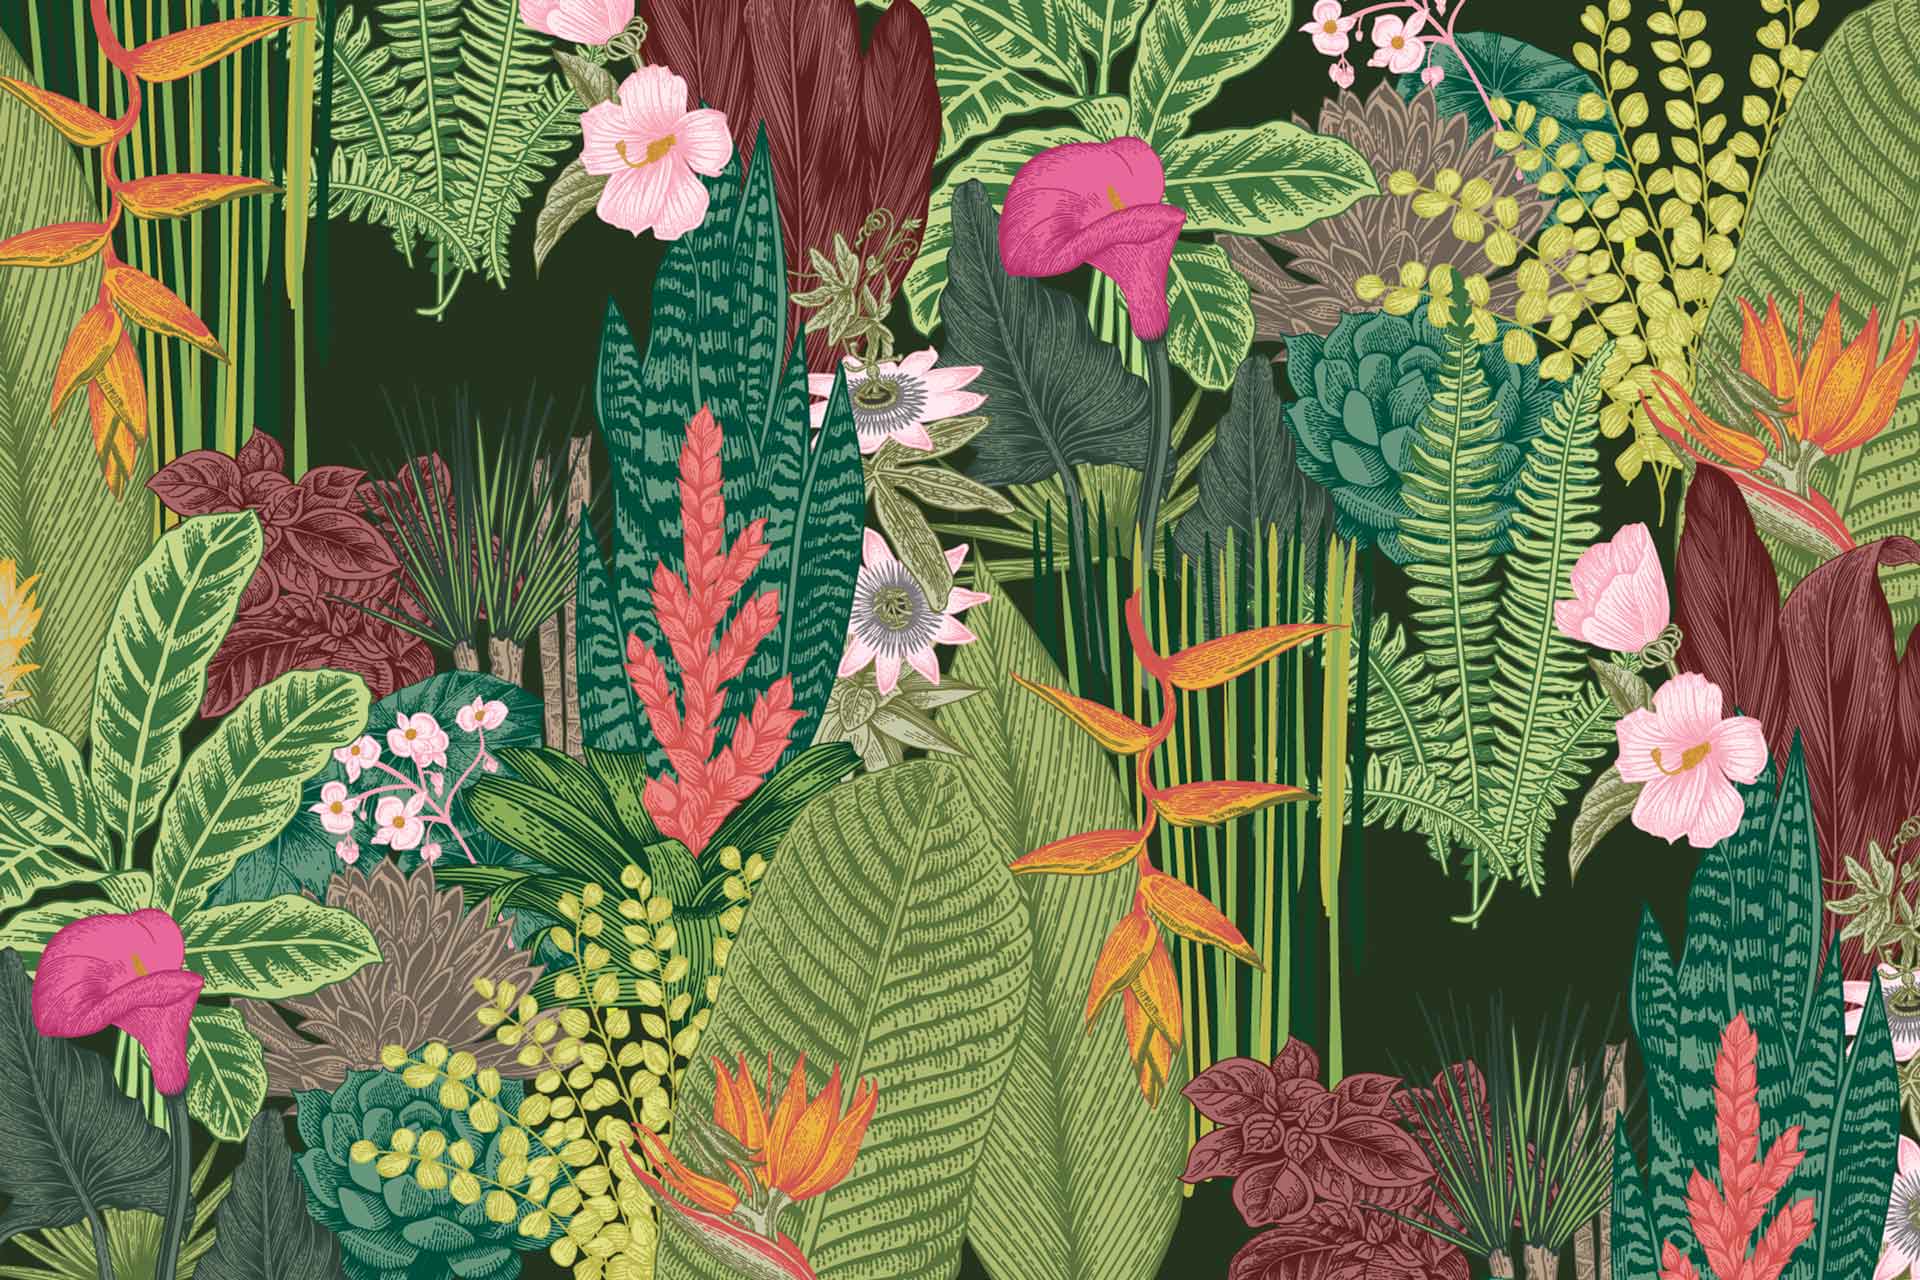 Garden of Eden Wallpapers - Top Free Garden of Eden Backgrounds ...